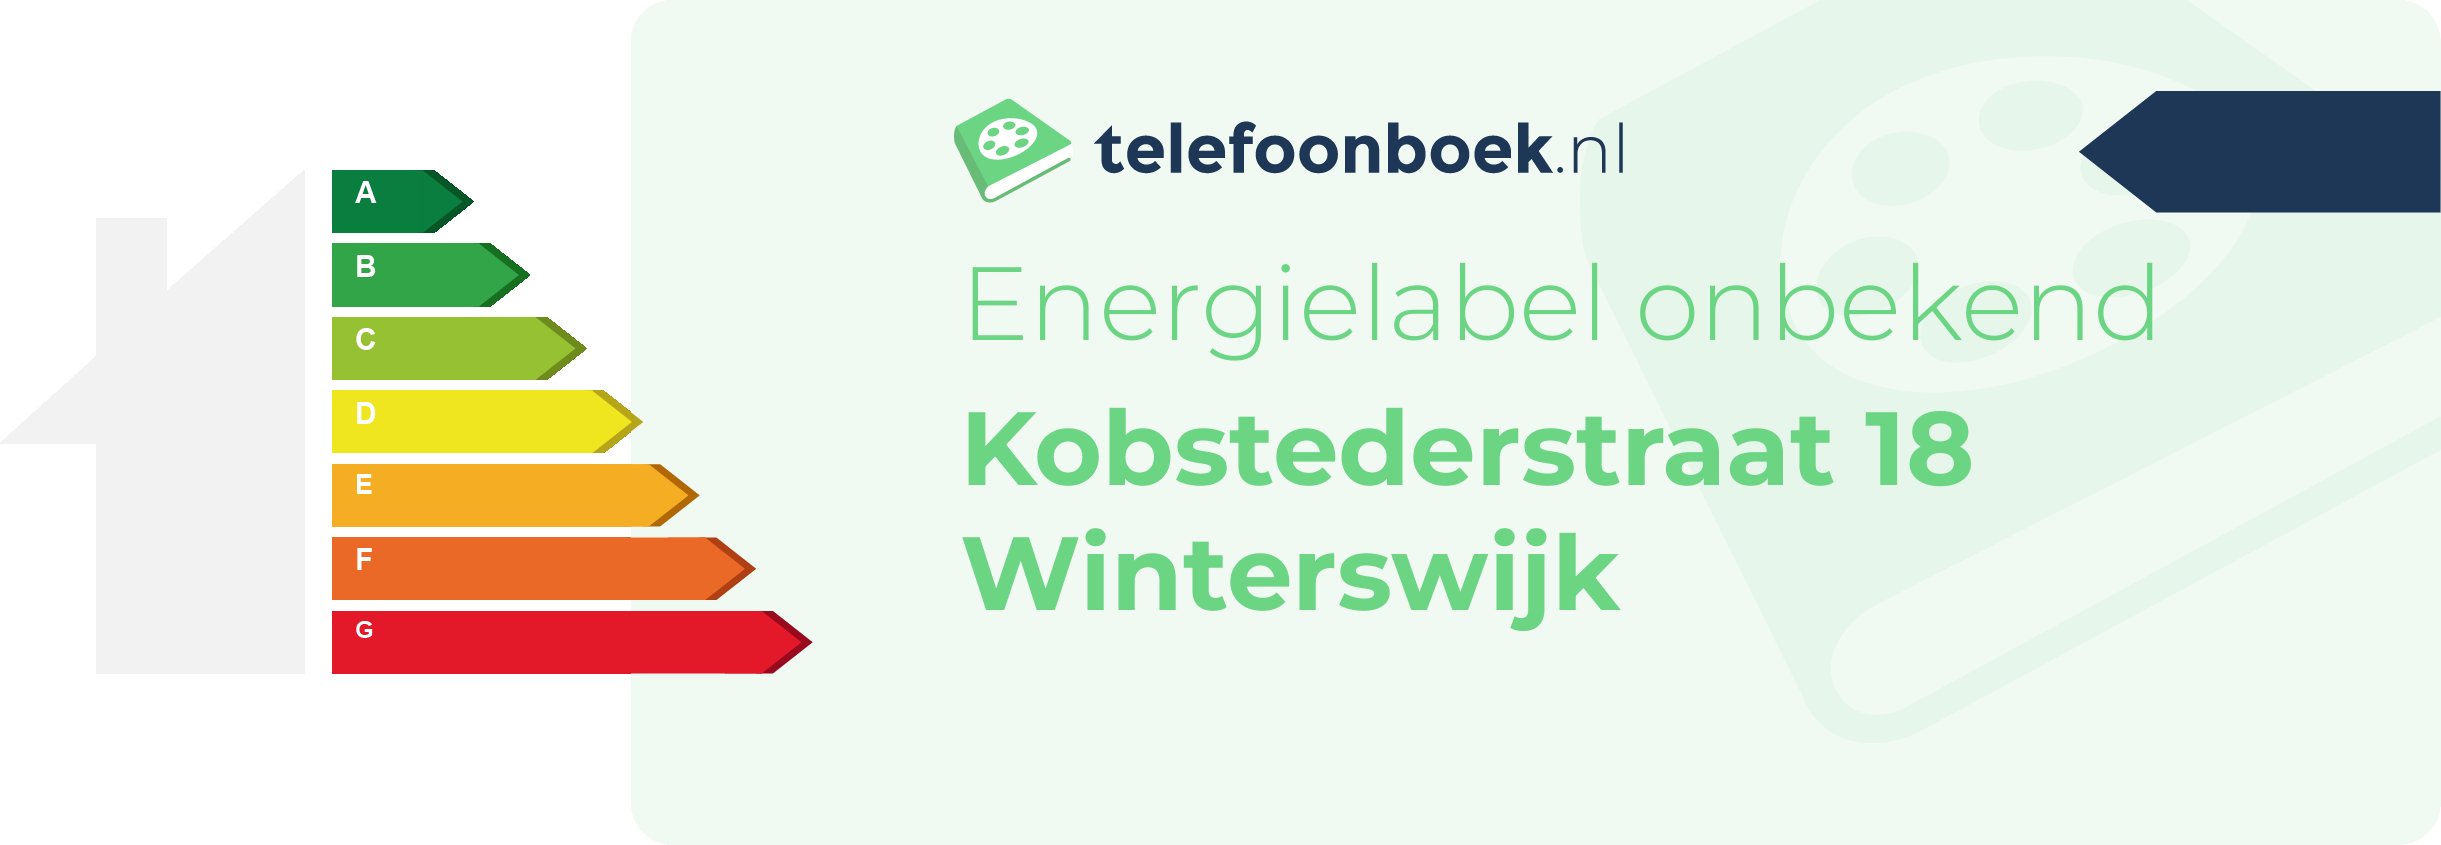 Energielabel Kobstederstraat 18 Winterswijk